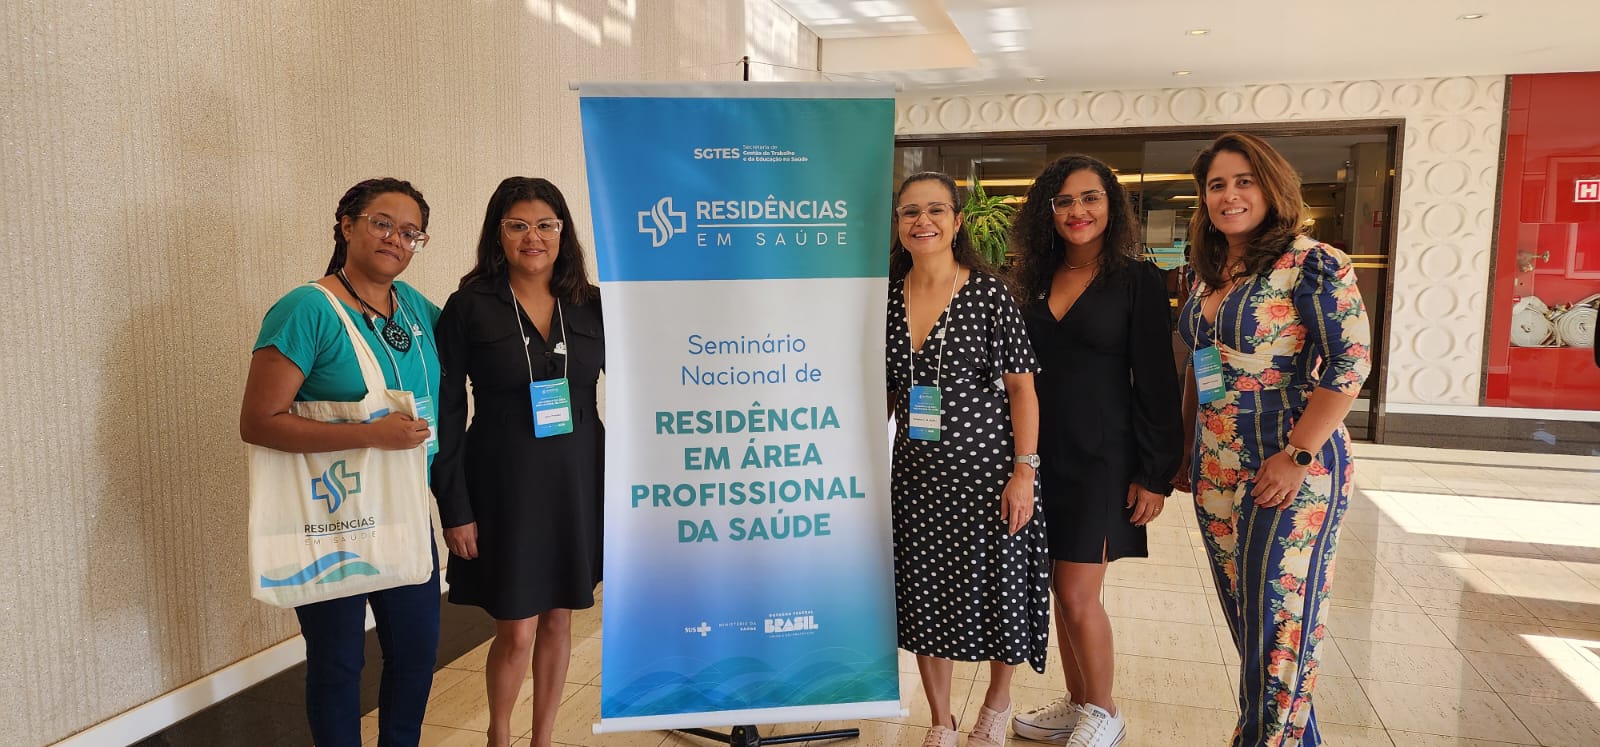 Fesp participa de Seminário Nacional de Residência em Área Profissional da Saúde em Brasília